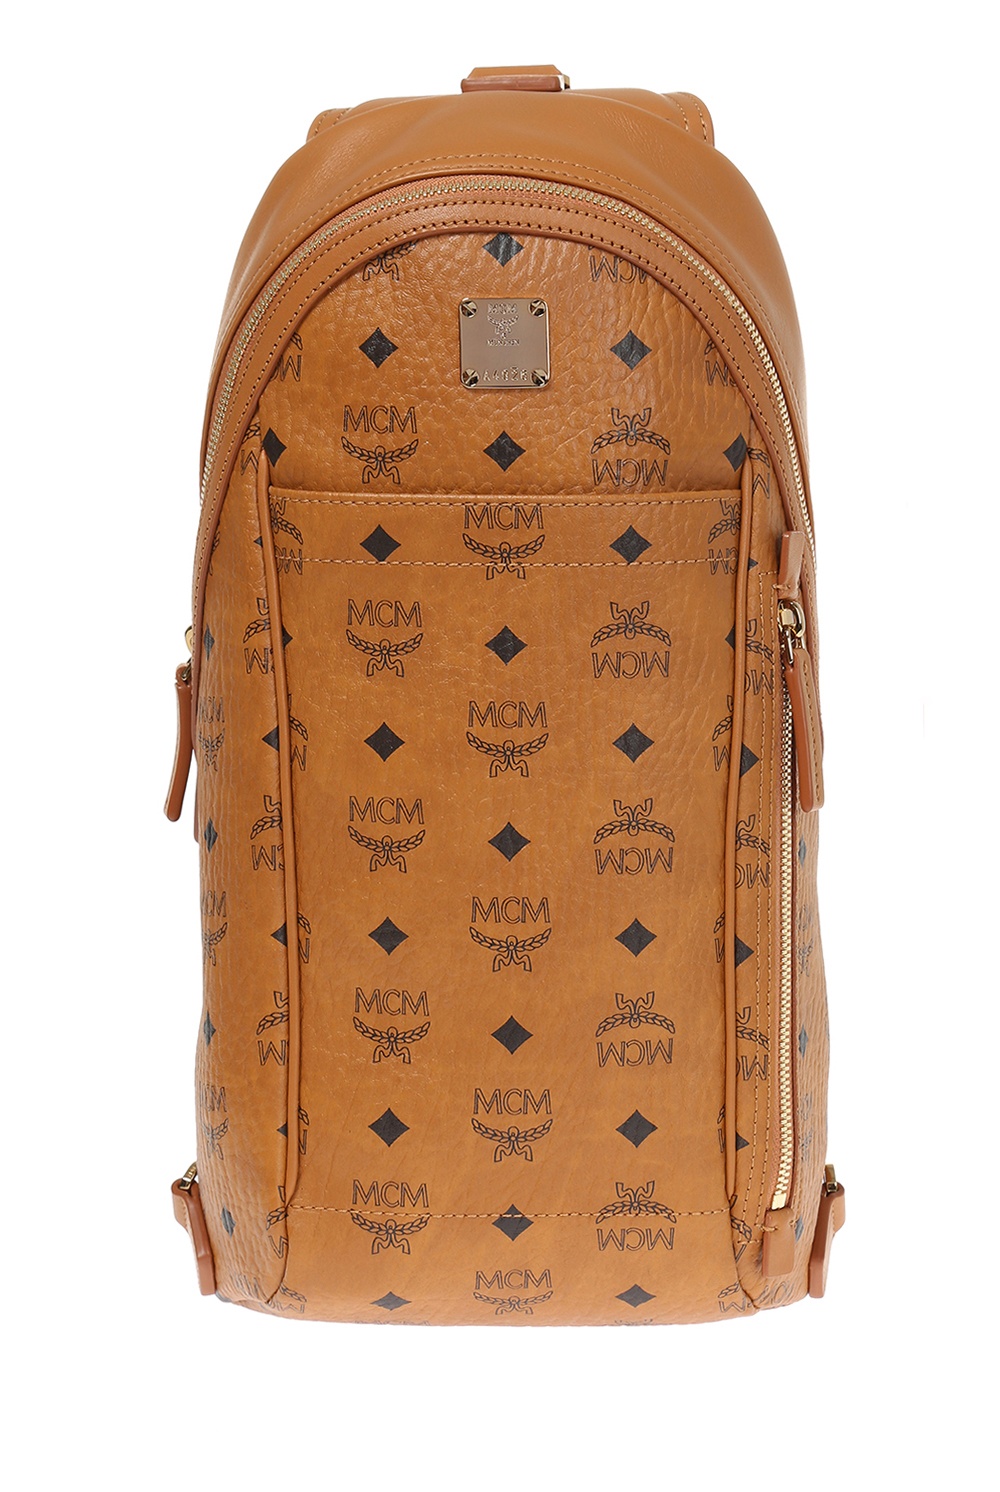 MCM One-shoulder backpack, Men's Bags